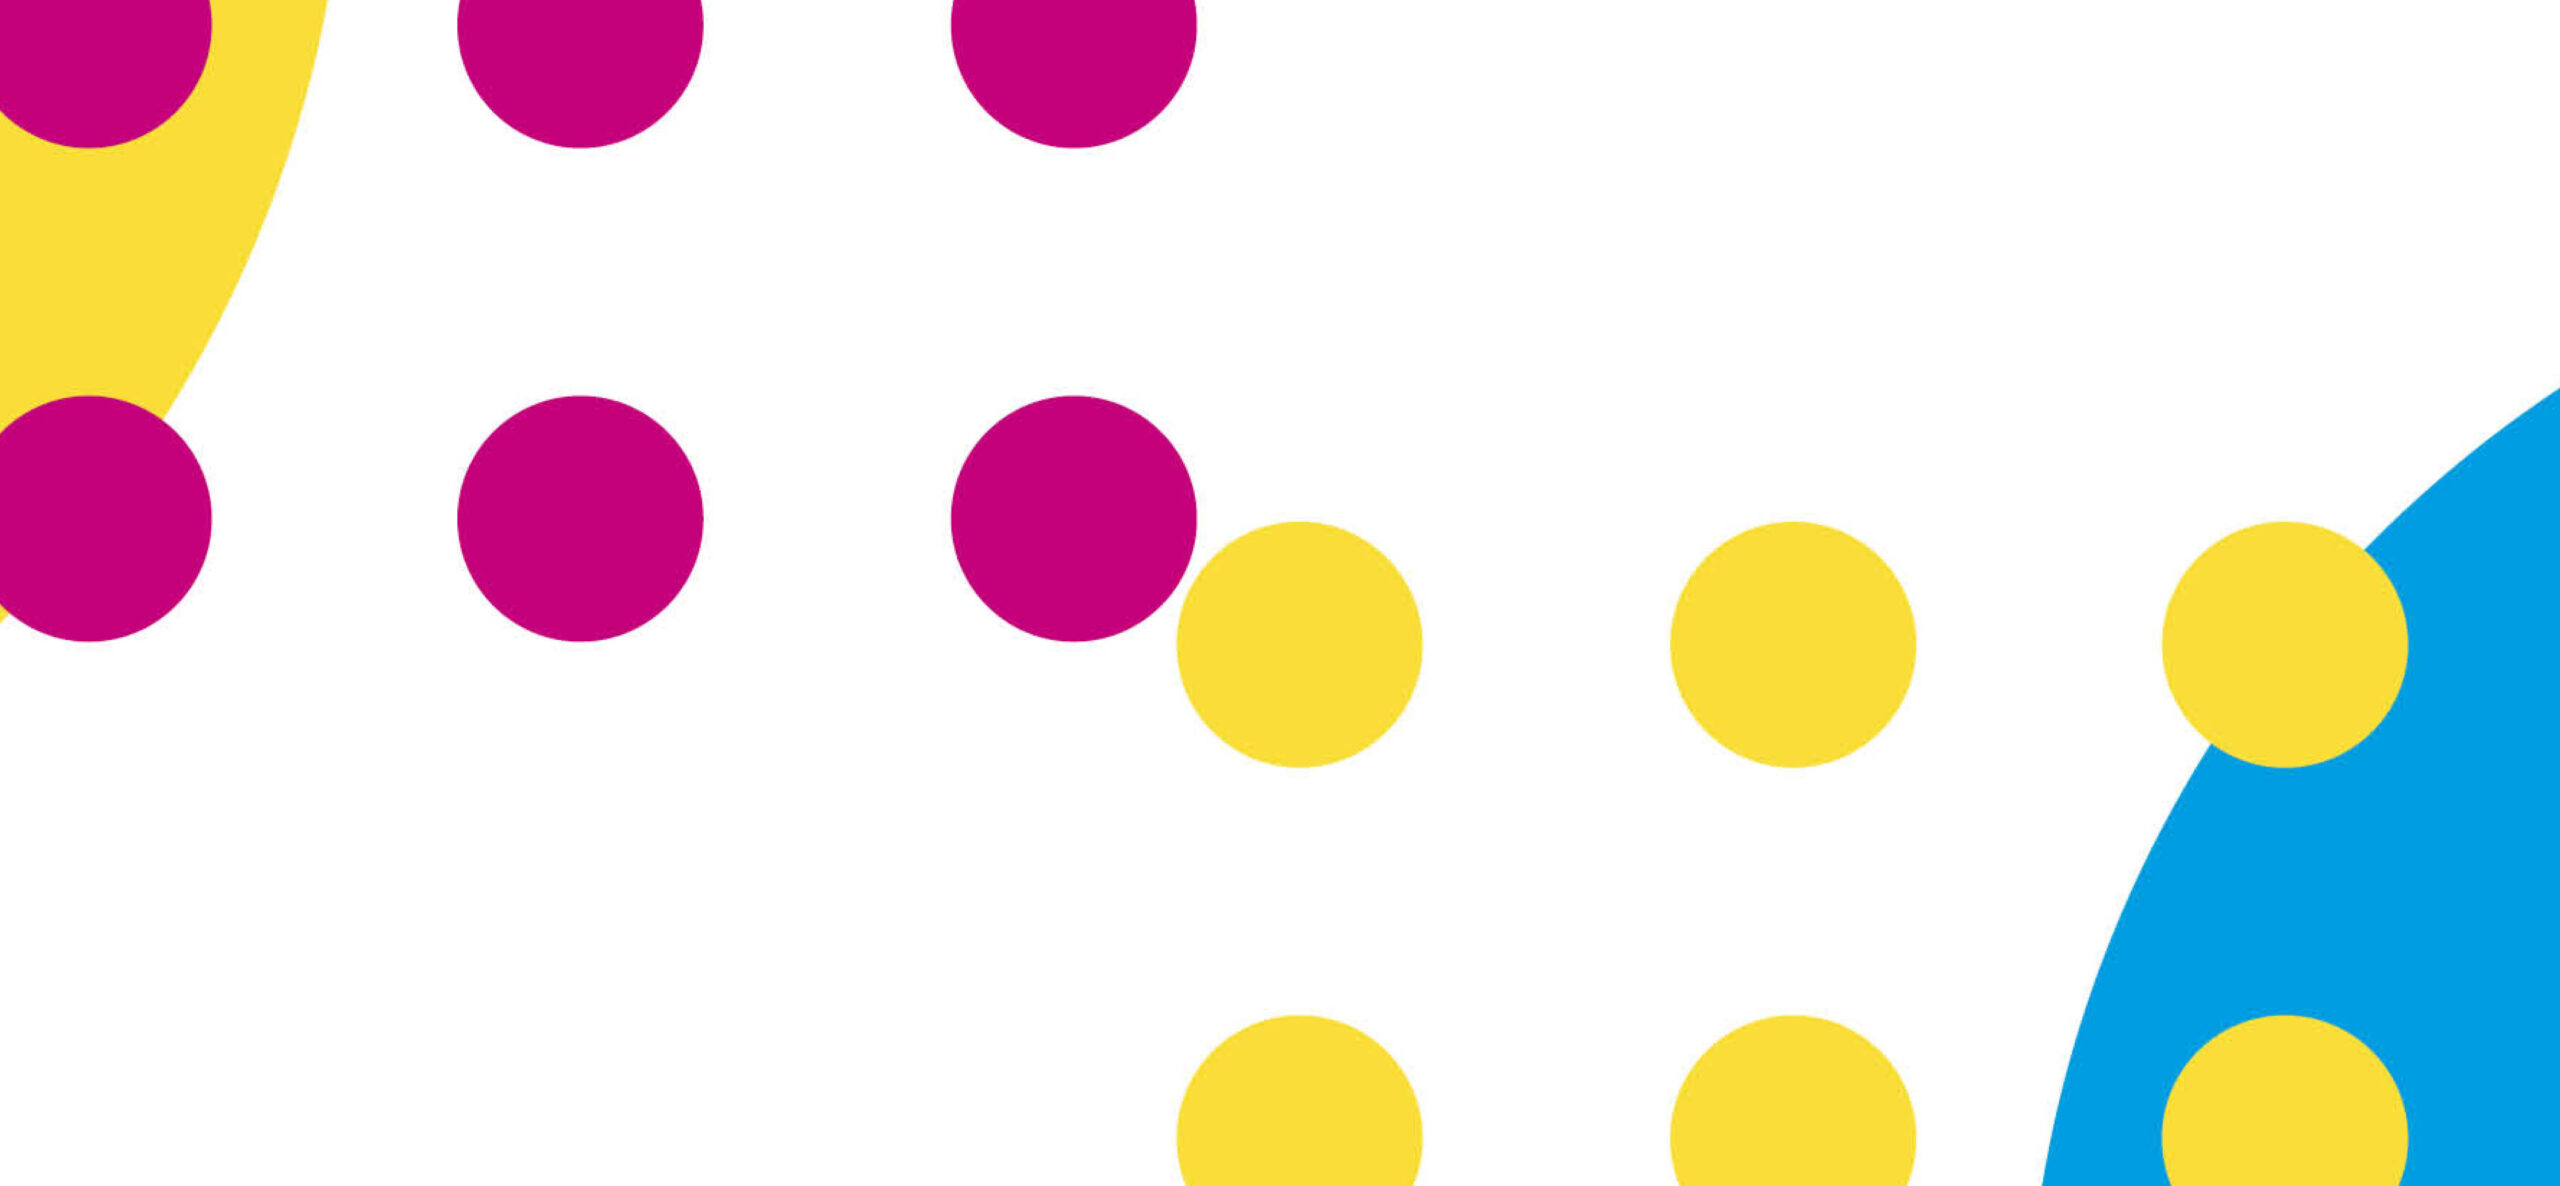 Comunicazione accessibile: l’immagine rappresenta dei cerchi con colori a contrasto che man mano si avvicinano